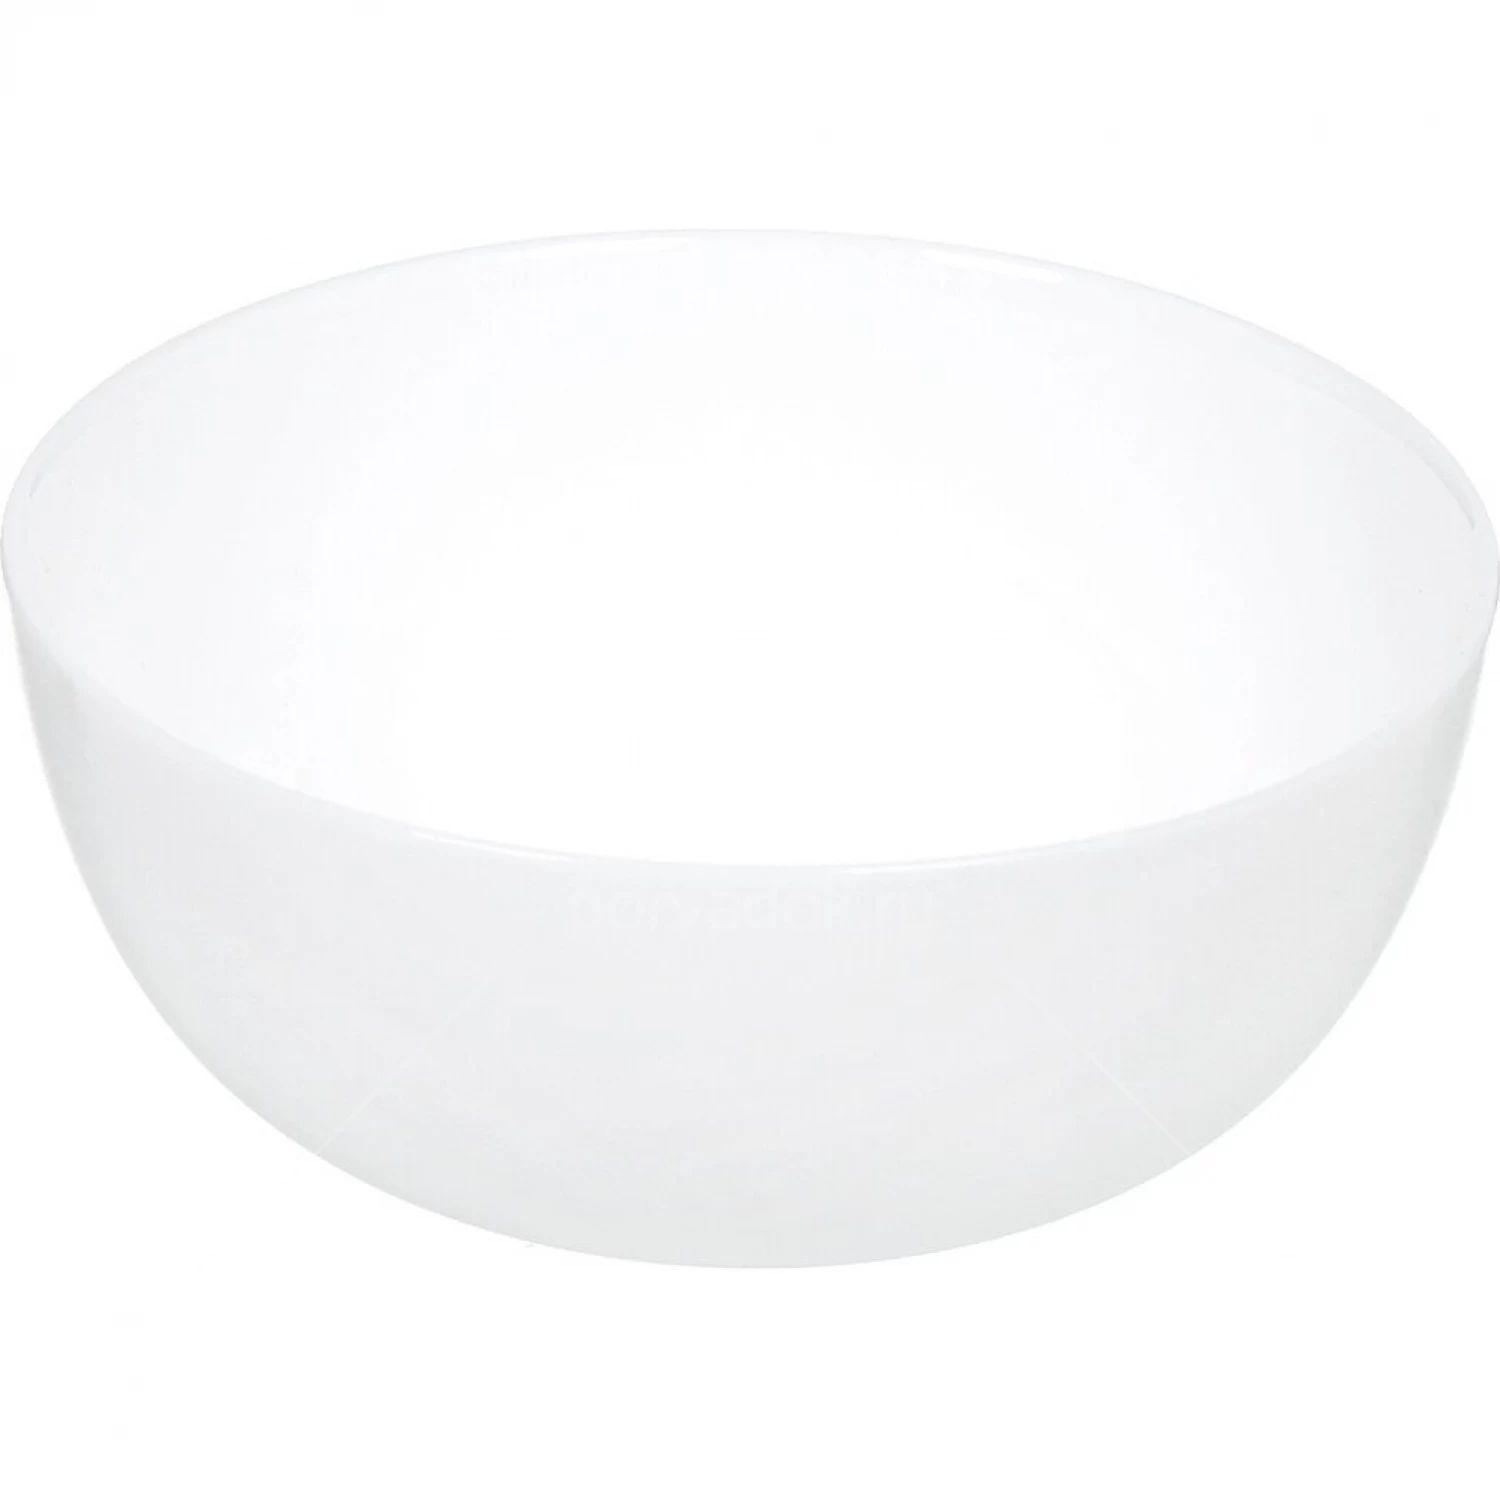 Салатник Luminarc "Дивали" d 18 см, стеклокерамика, белый цвет, ARC